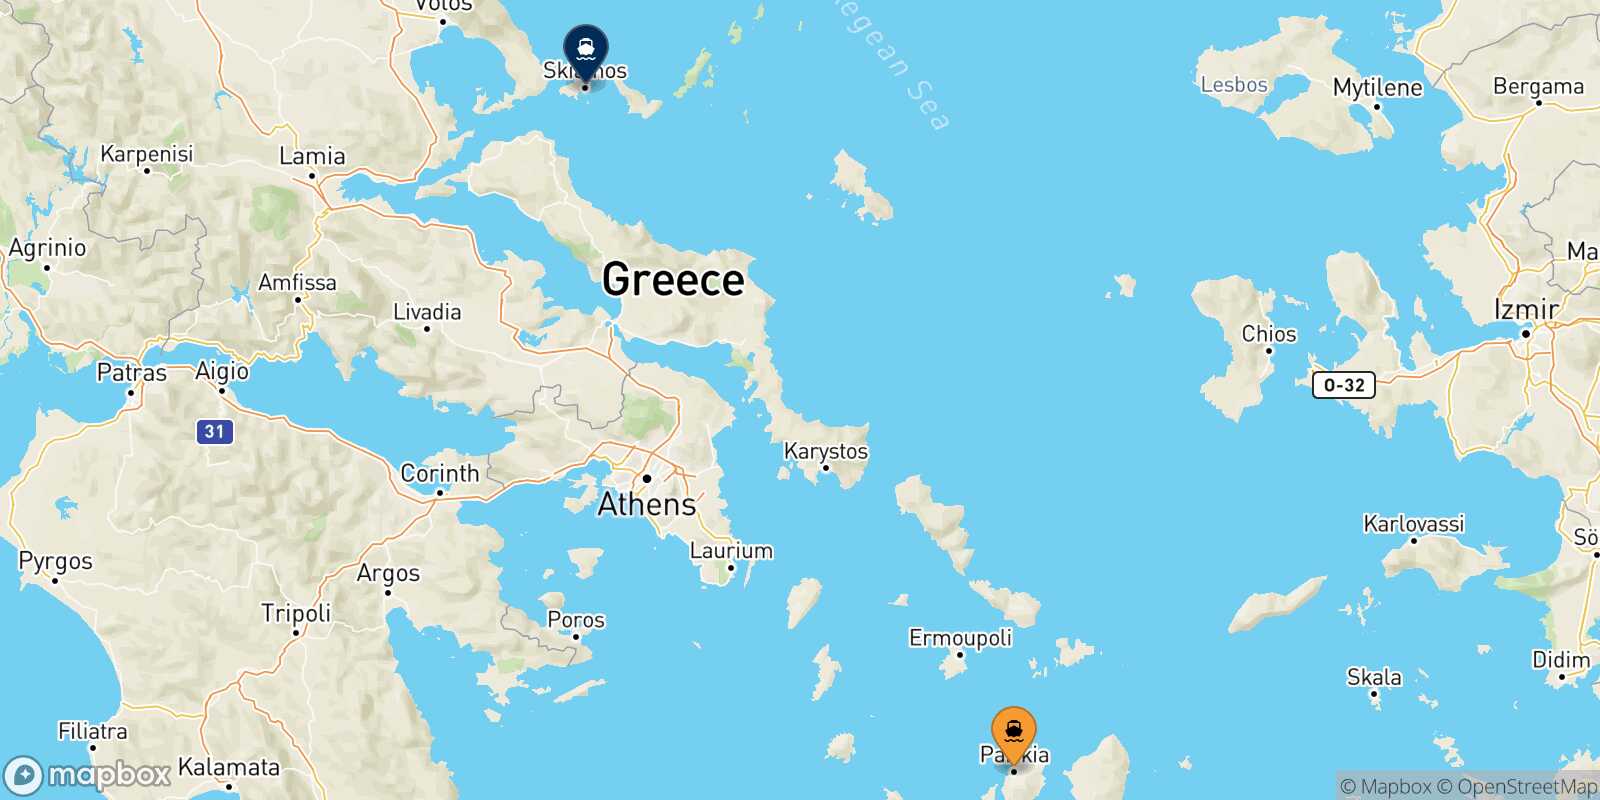 Mappa delle destinazioni raggiungibili da Paros